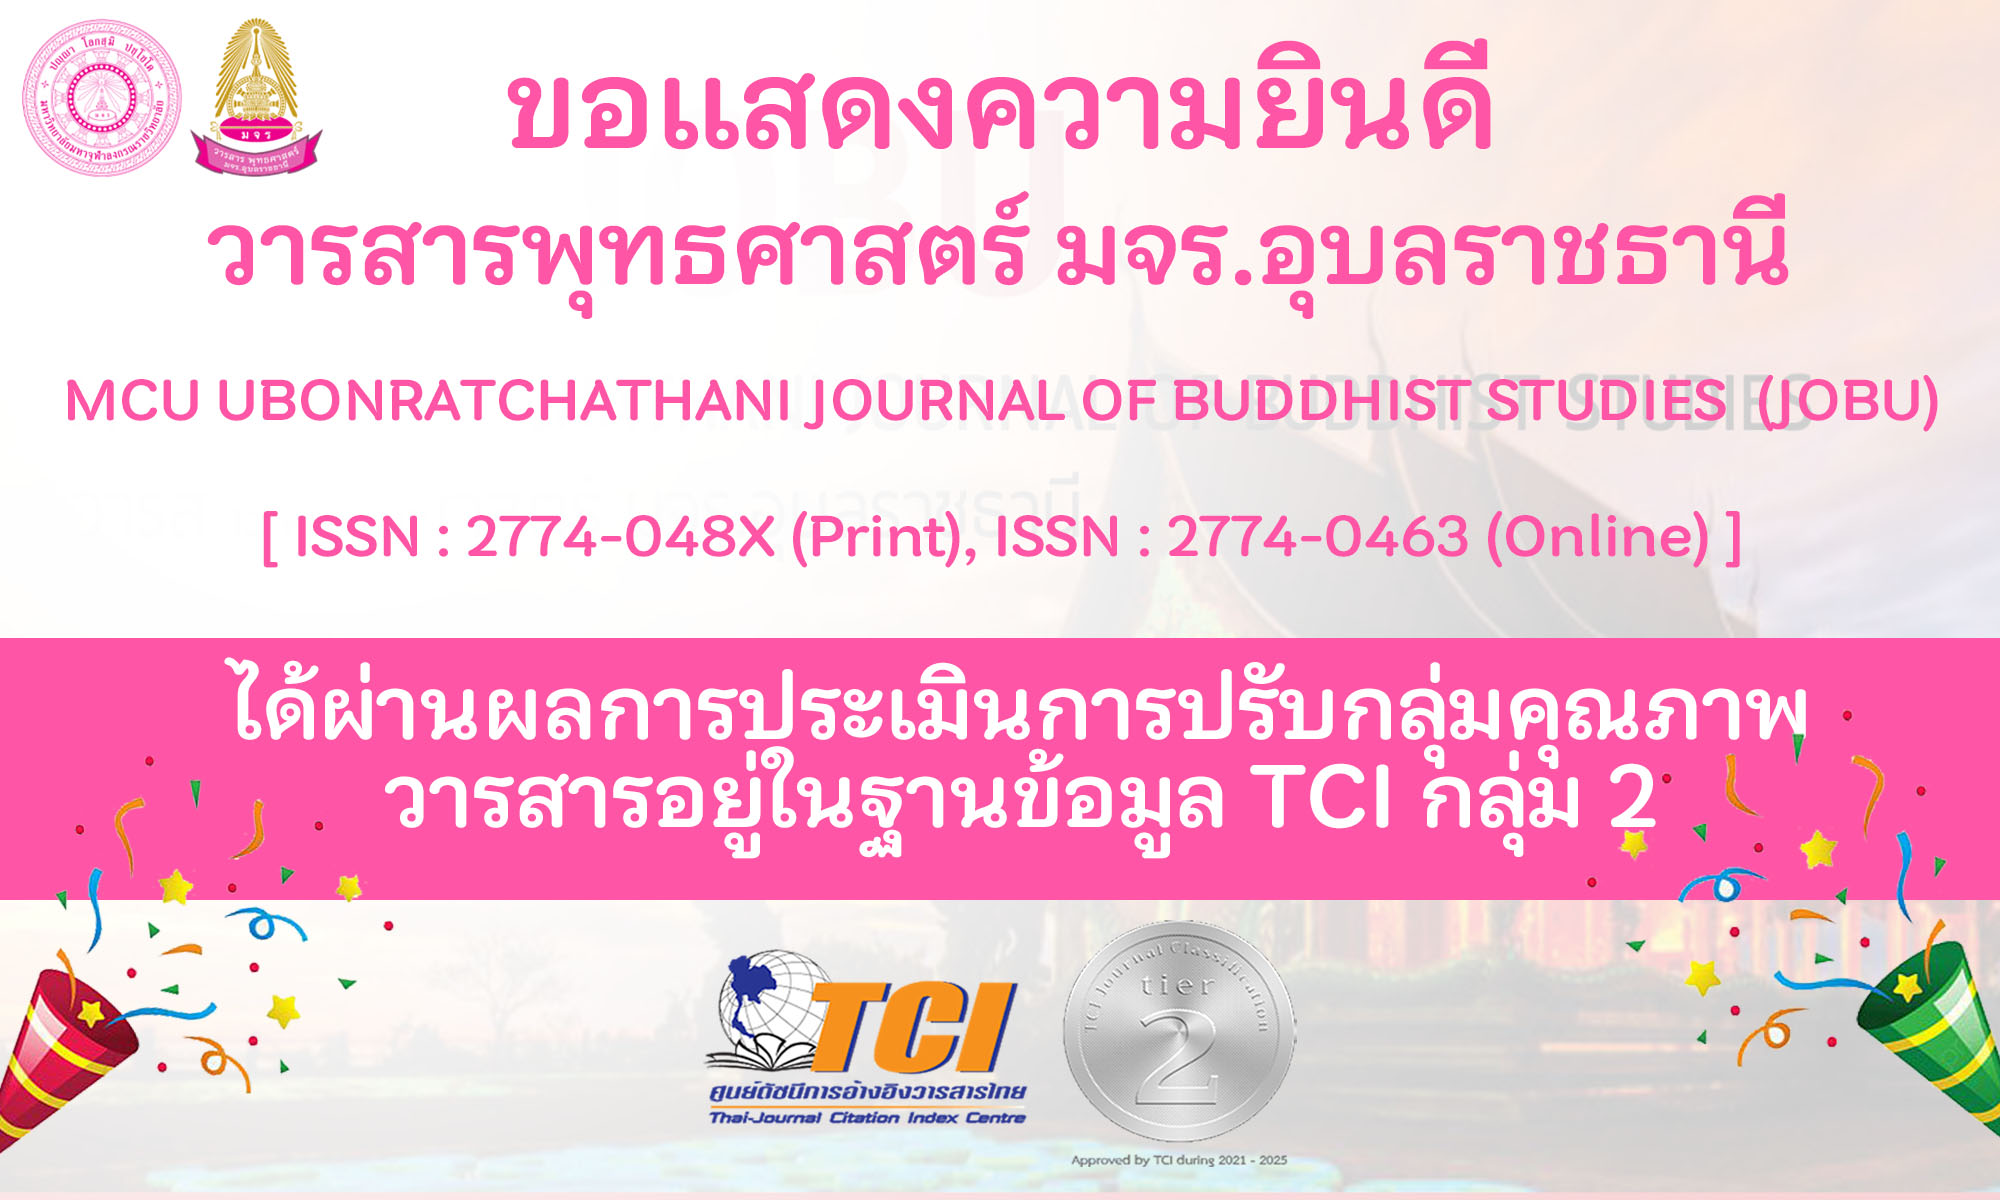 ขอแสดงความยินดี วารสารพุทธศาสตร์ มจร.อุบลราชธานี MCU UBONRATCHATHANI JOURNAL OF BUDDHIST STUDIES  (JOBU)